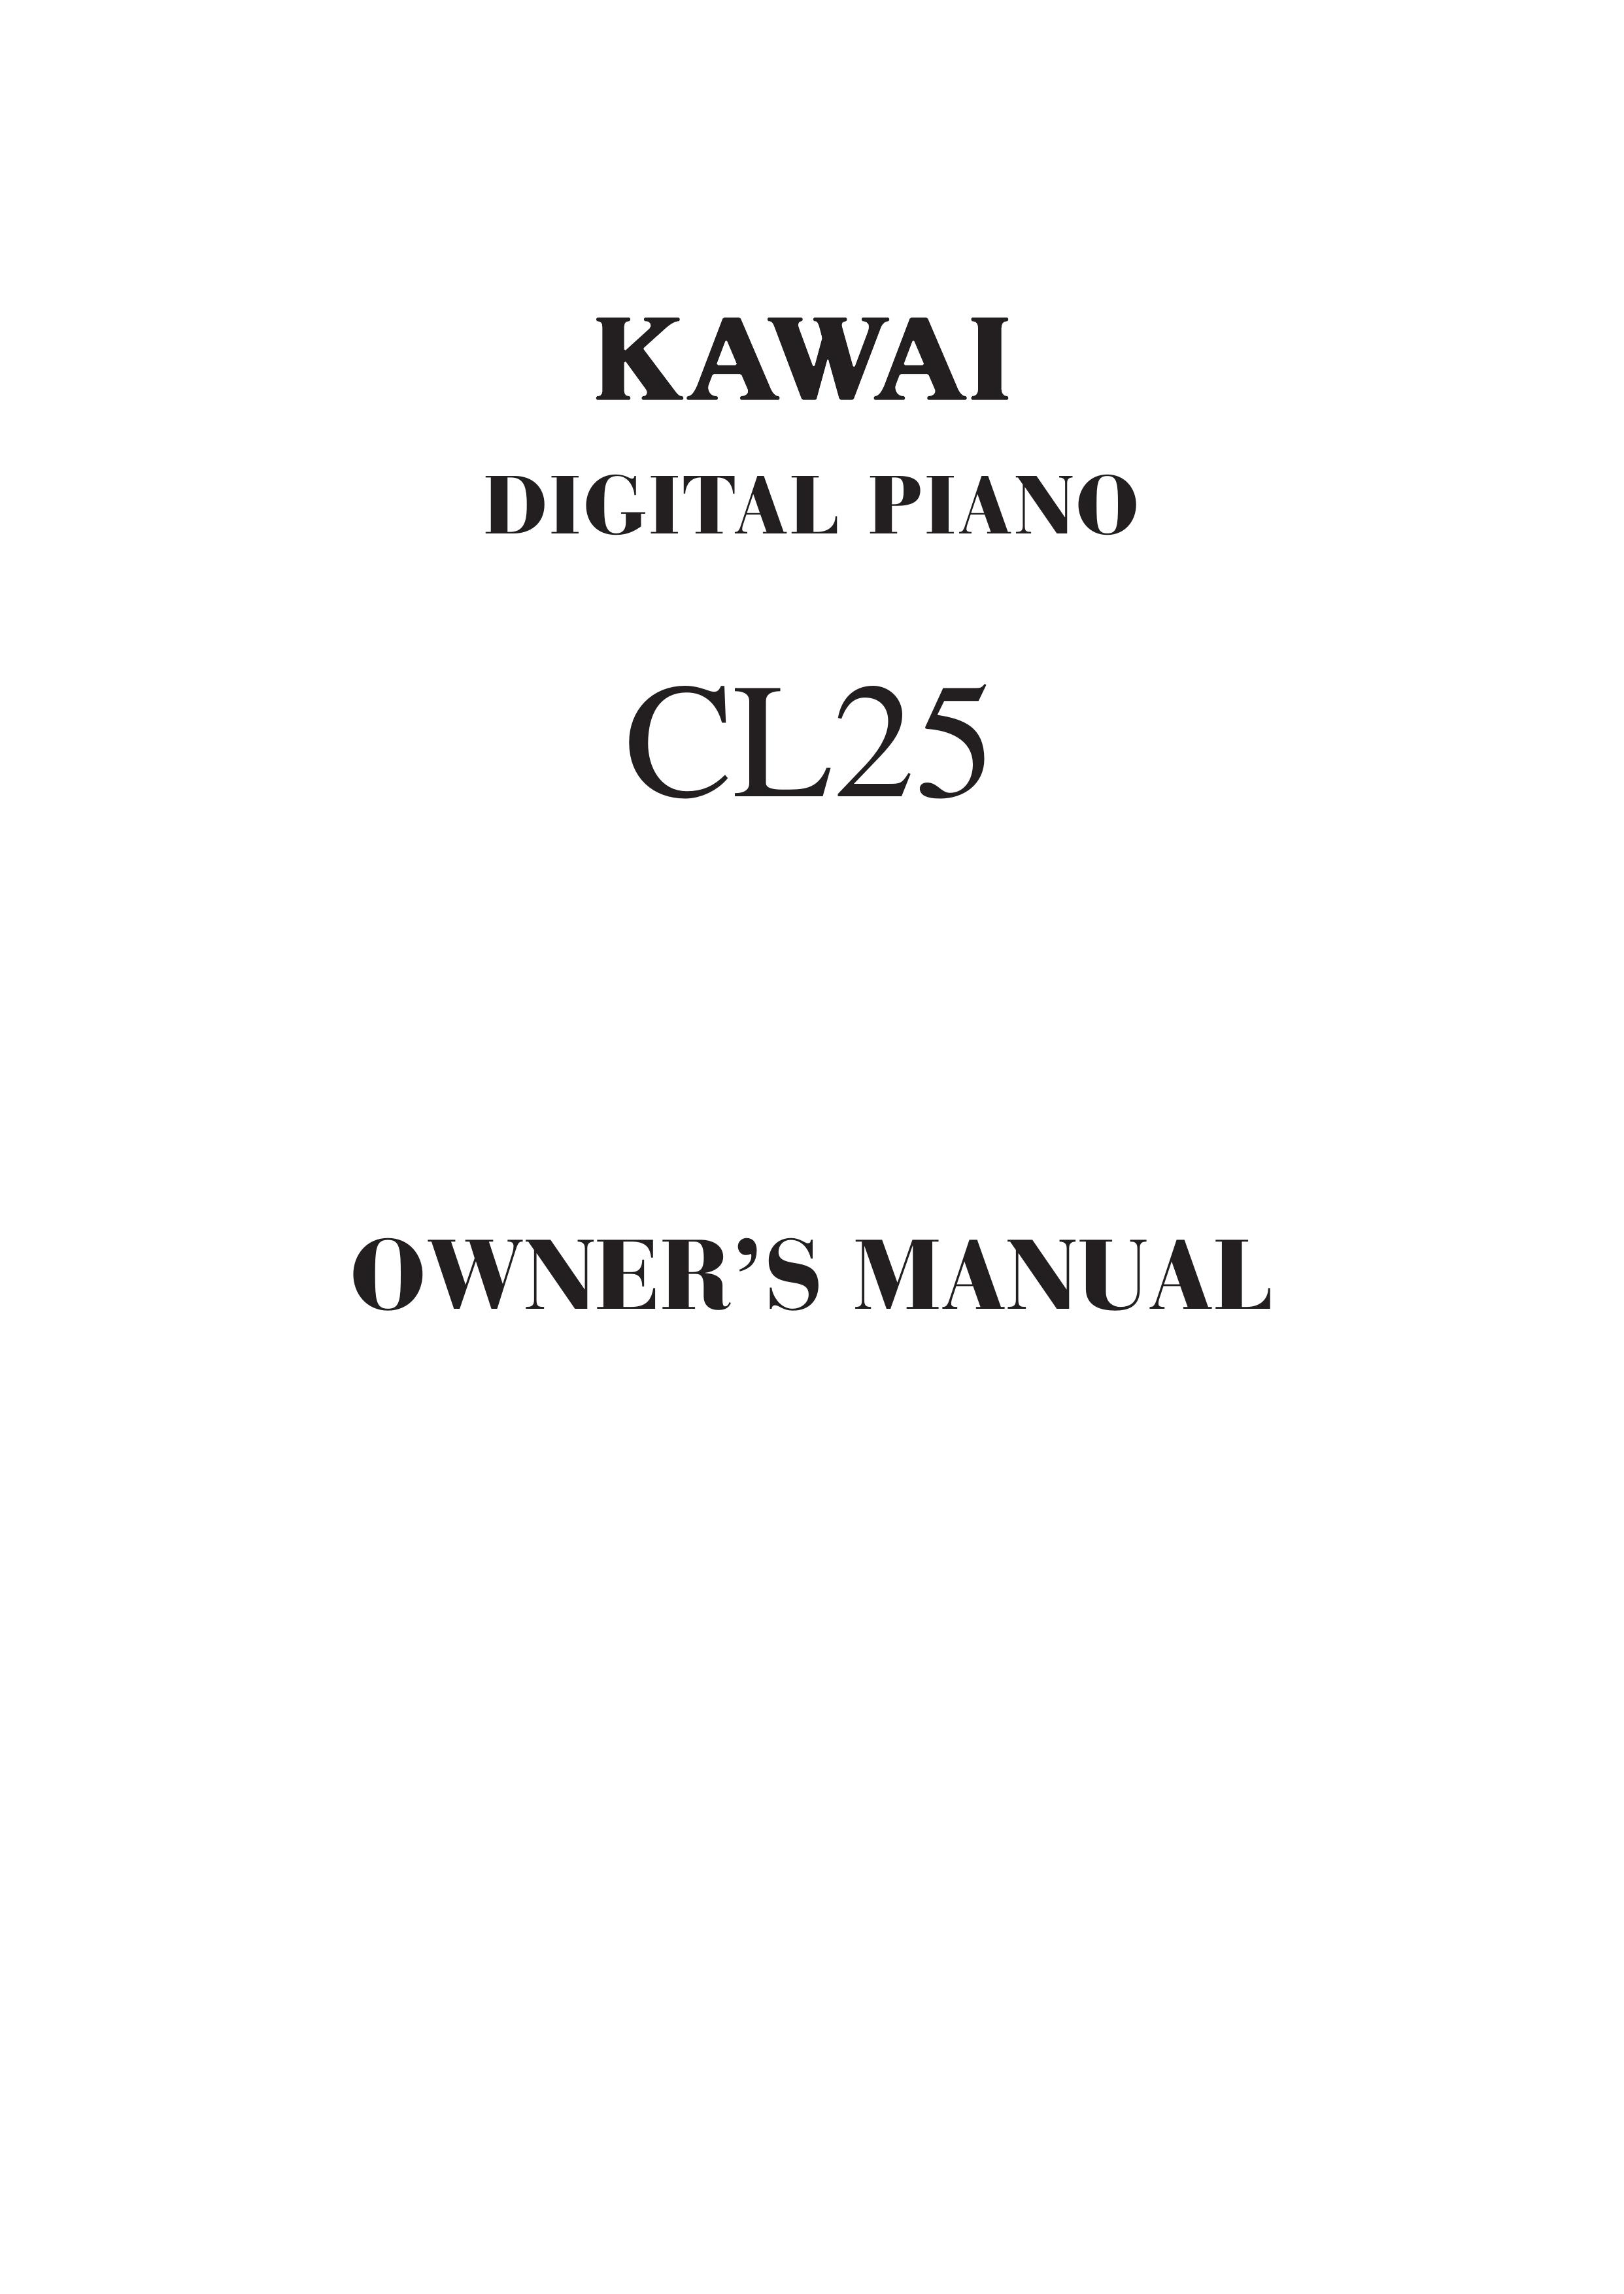 Kawai CL25 Electronic Keyboard User Manual